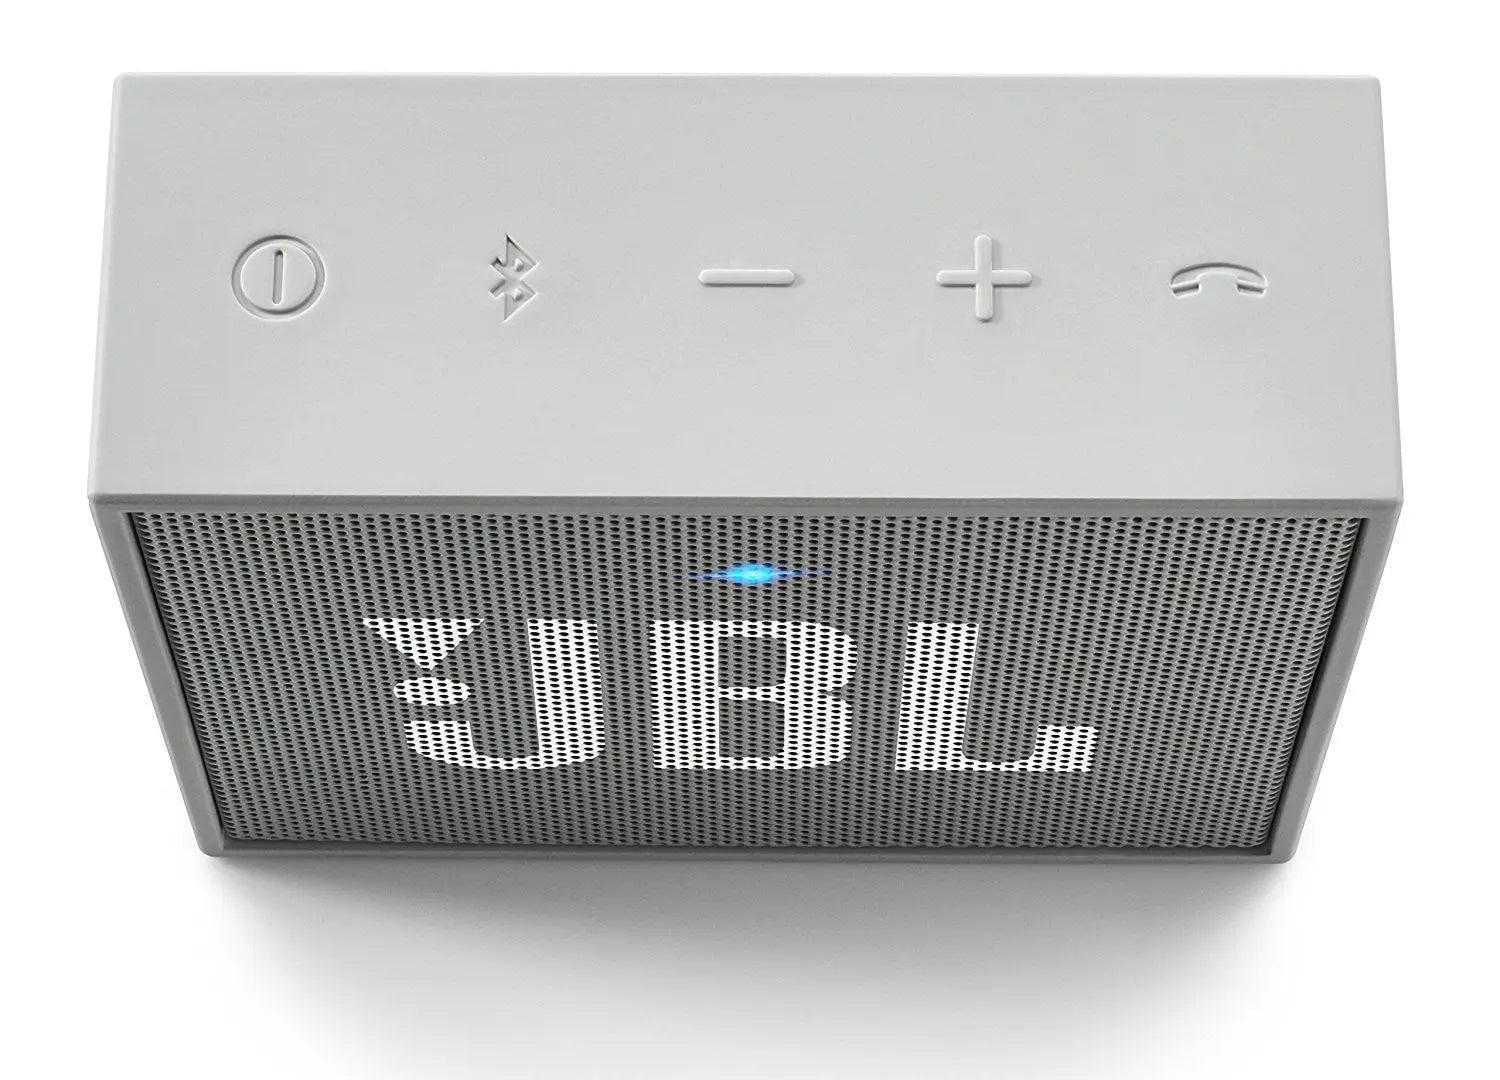 Test : JBL GO, la petite enceinte Bluetooth bon marché au son